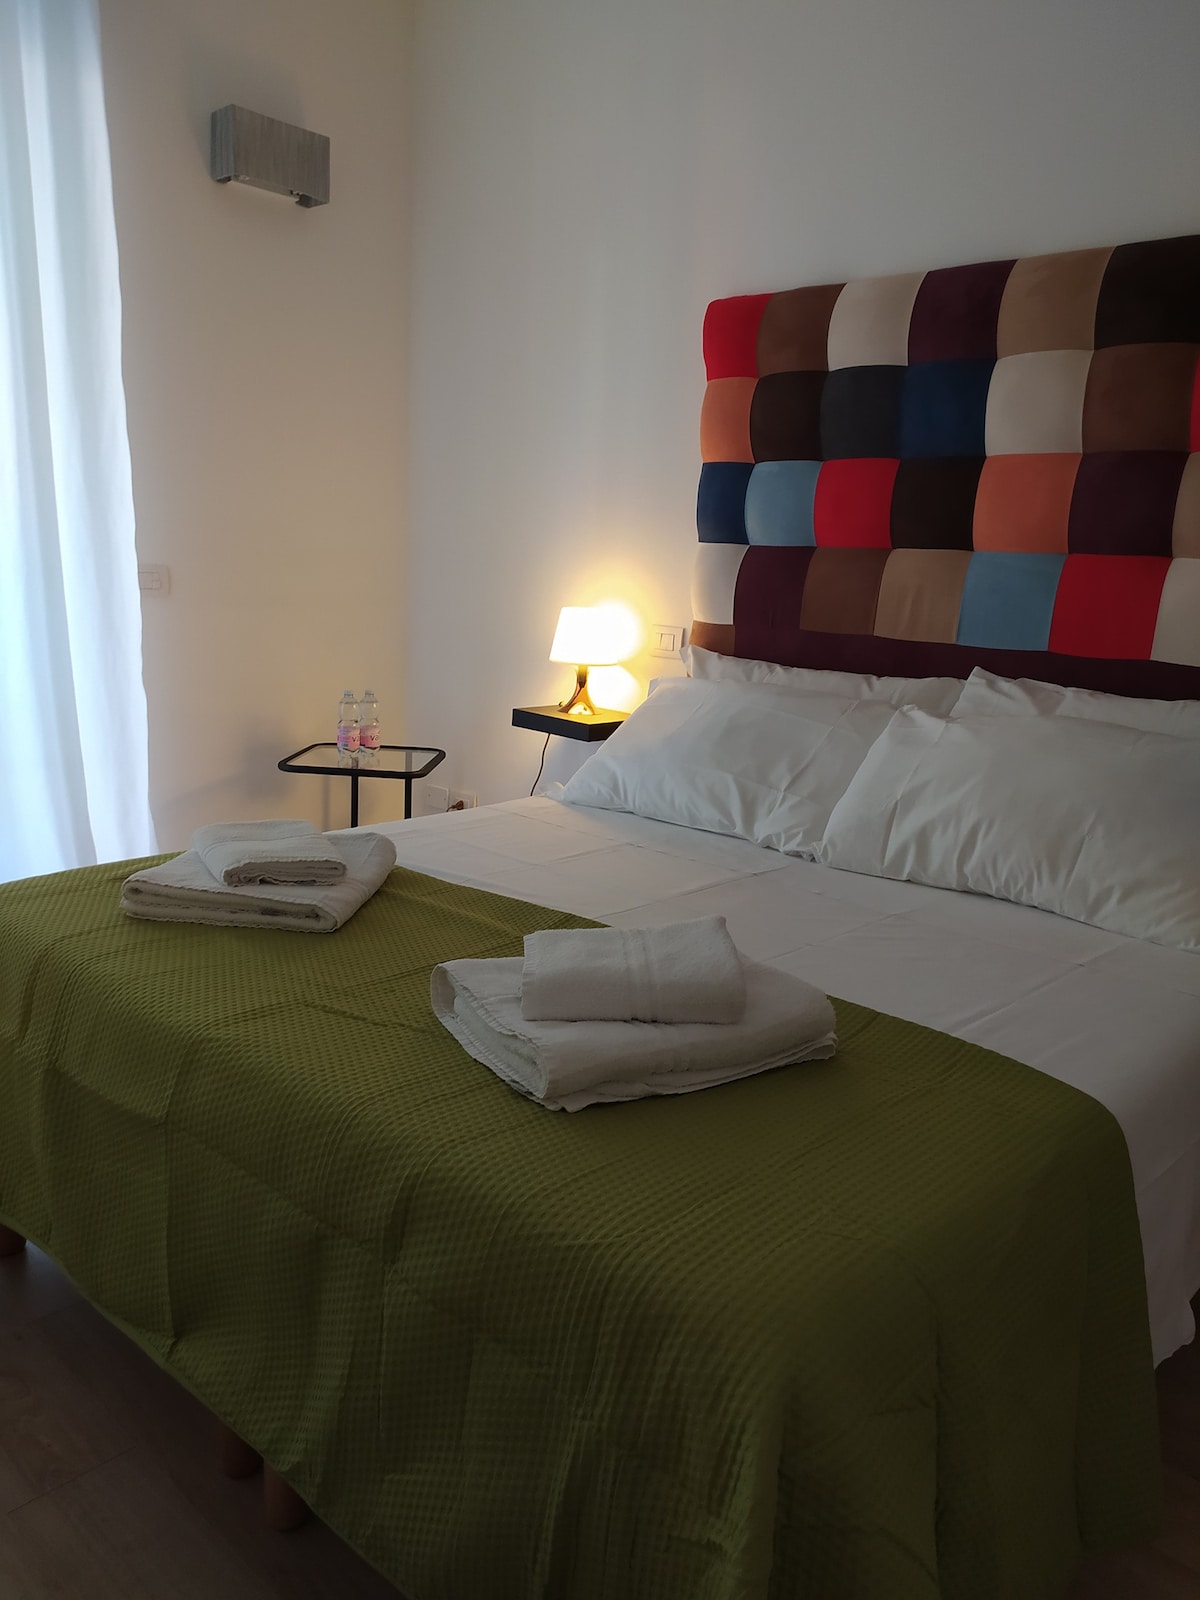 Adige Rooms Sleeping in the center of Verona 2!